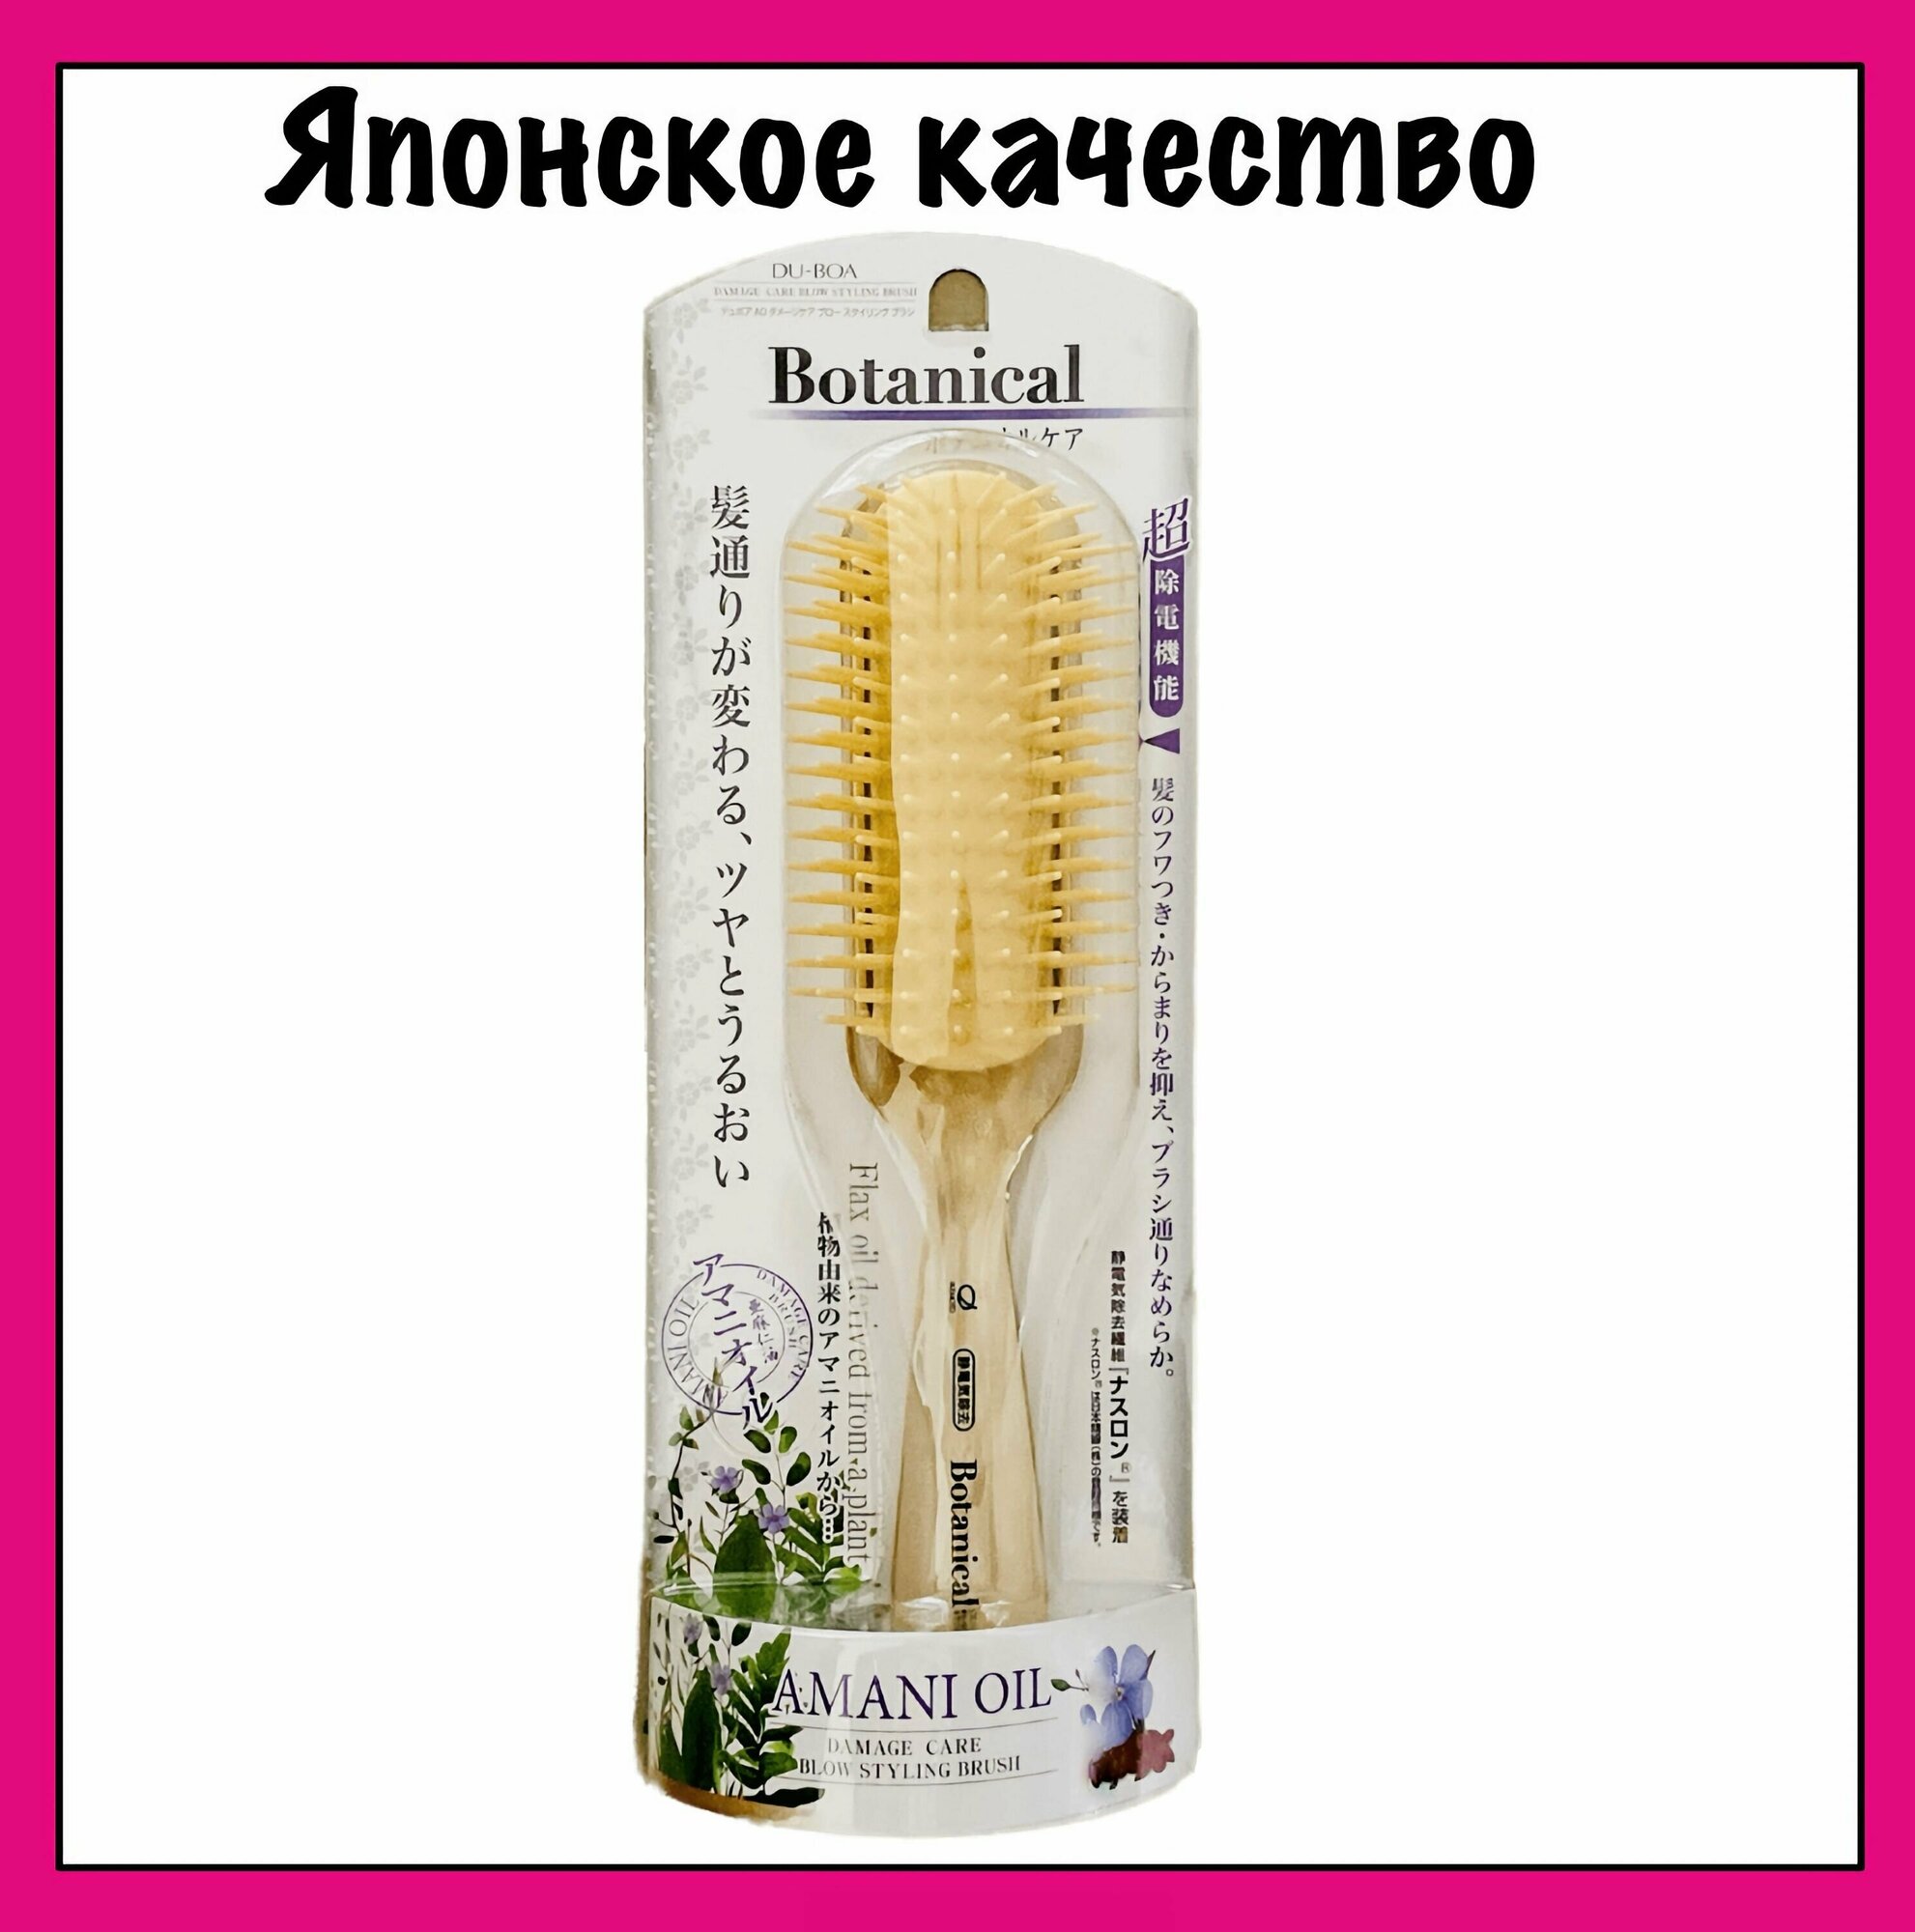 Ikemoto Расческа-щетка для ухода за поврежденными волосами Botanical Amani Oil, с маслом льна, для укладки волос, 1шт.